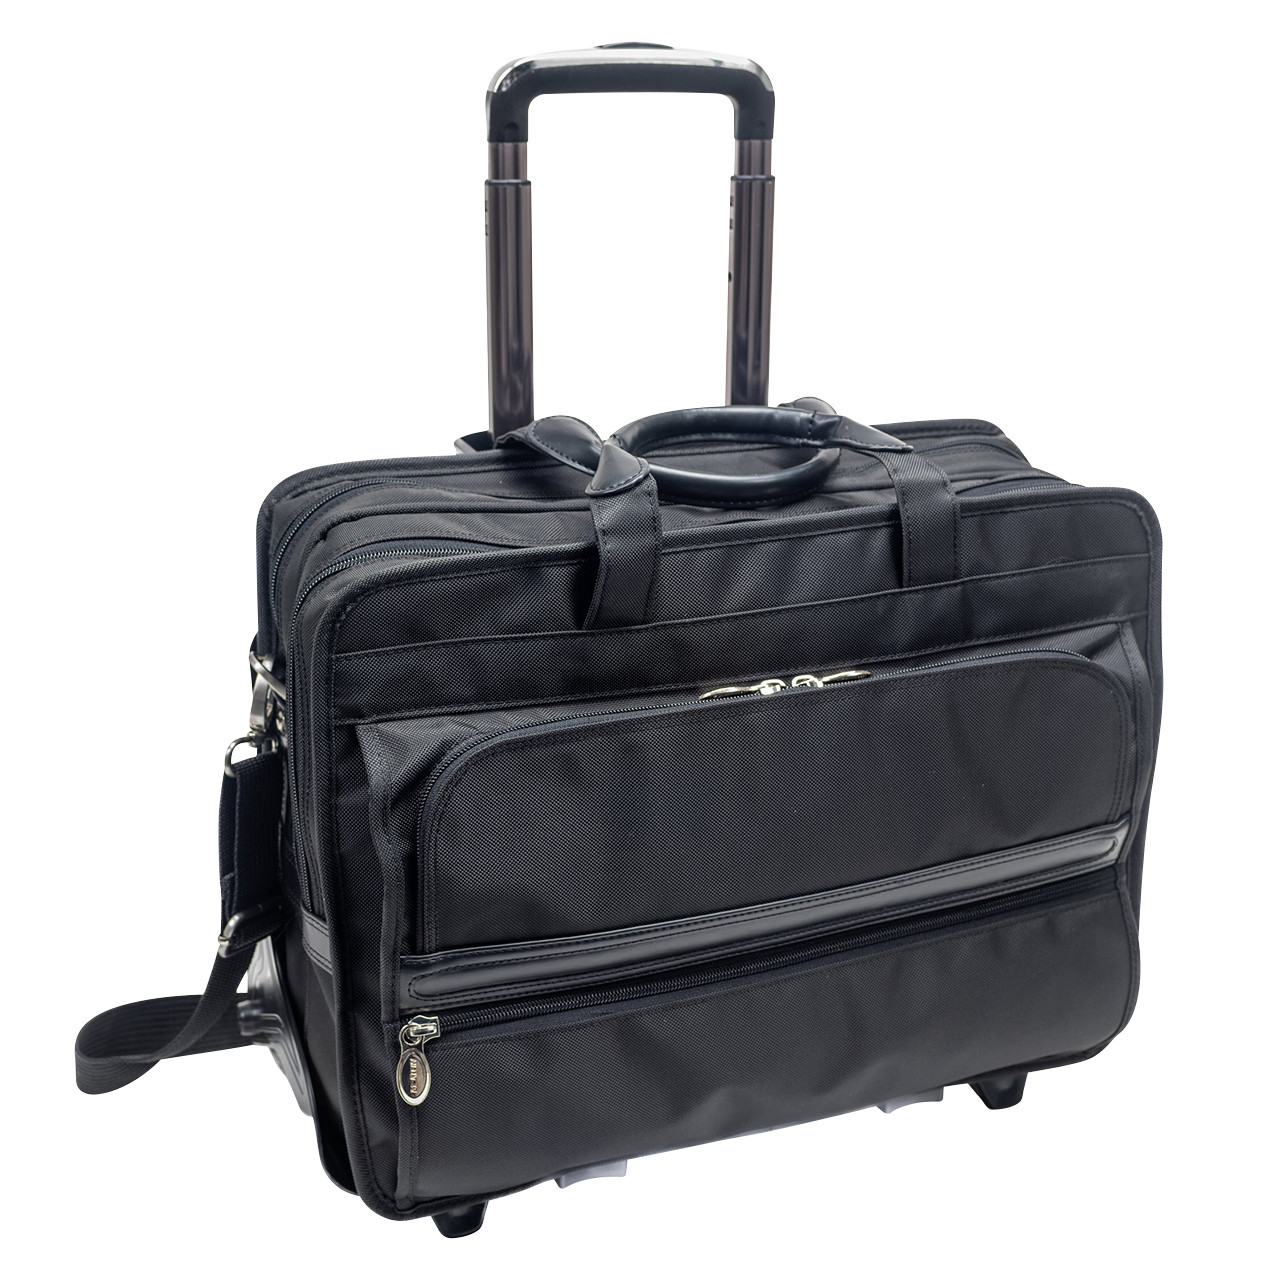 Franklin Covey Black Leather Work Laptop Bag Briefcase Shoulder Tote  Organizer